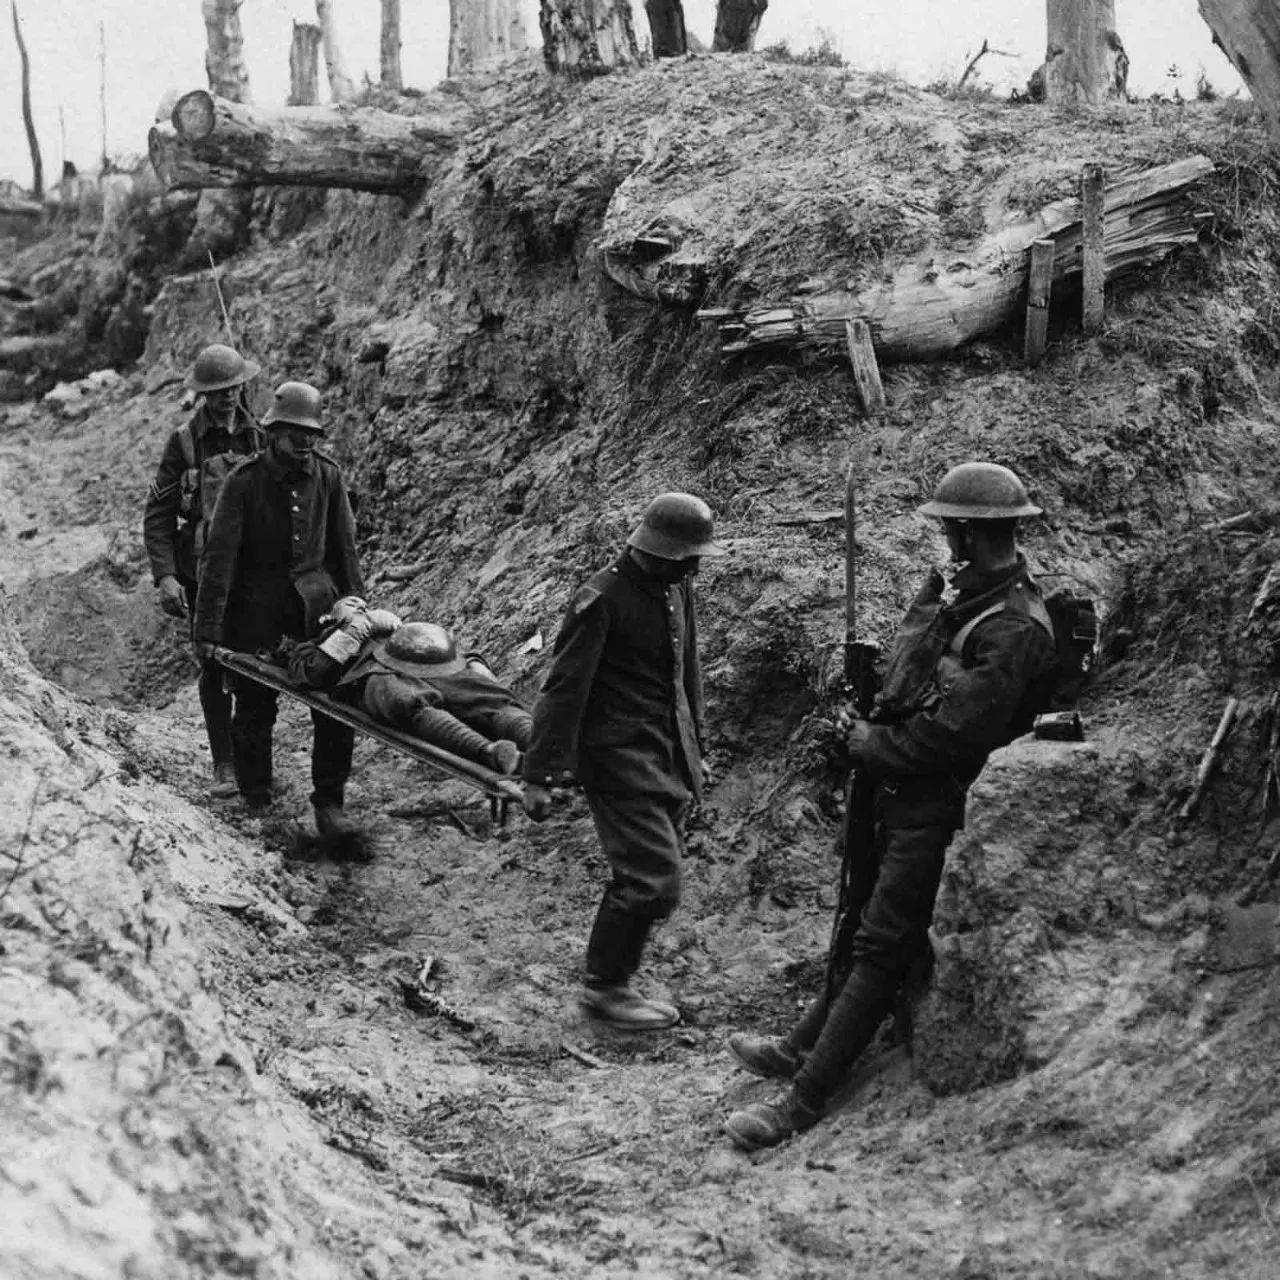 原创波济耶尔磨坊:一战阵地消耗战的缩影,英国军队一天伤亡6万人